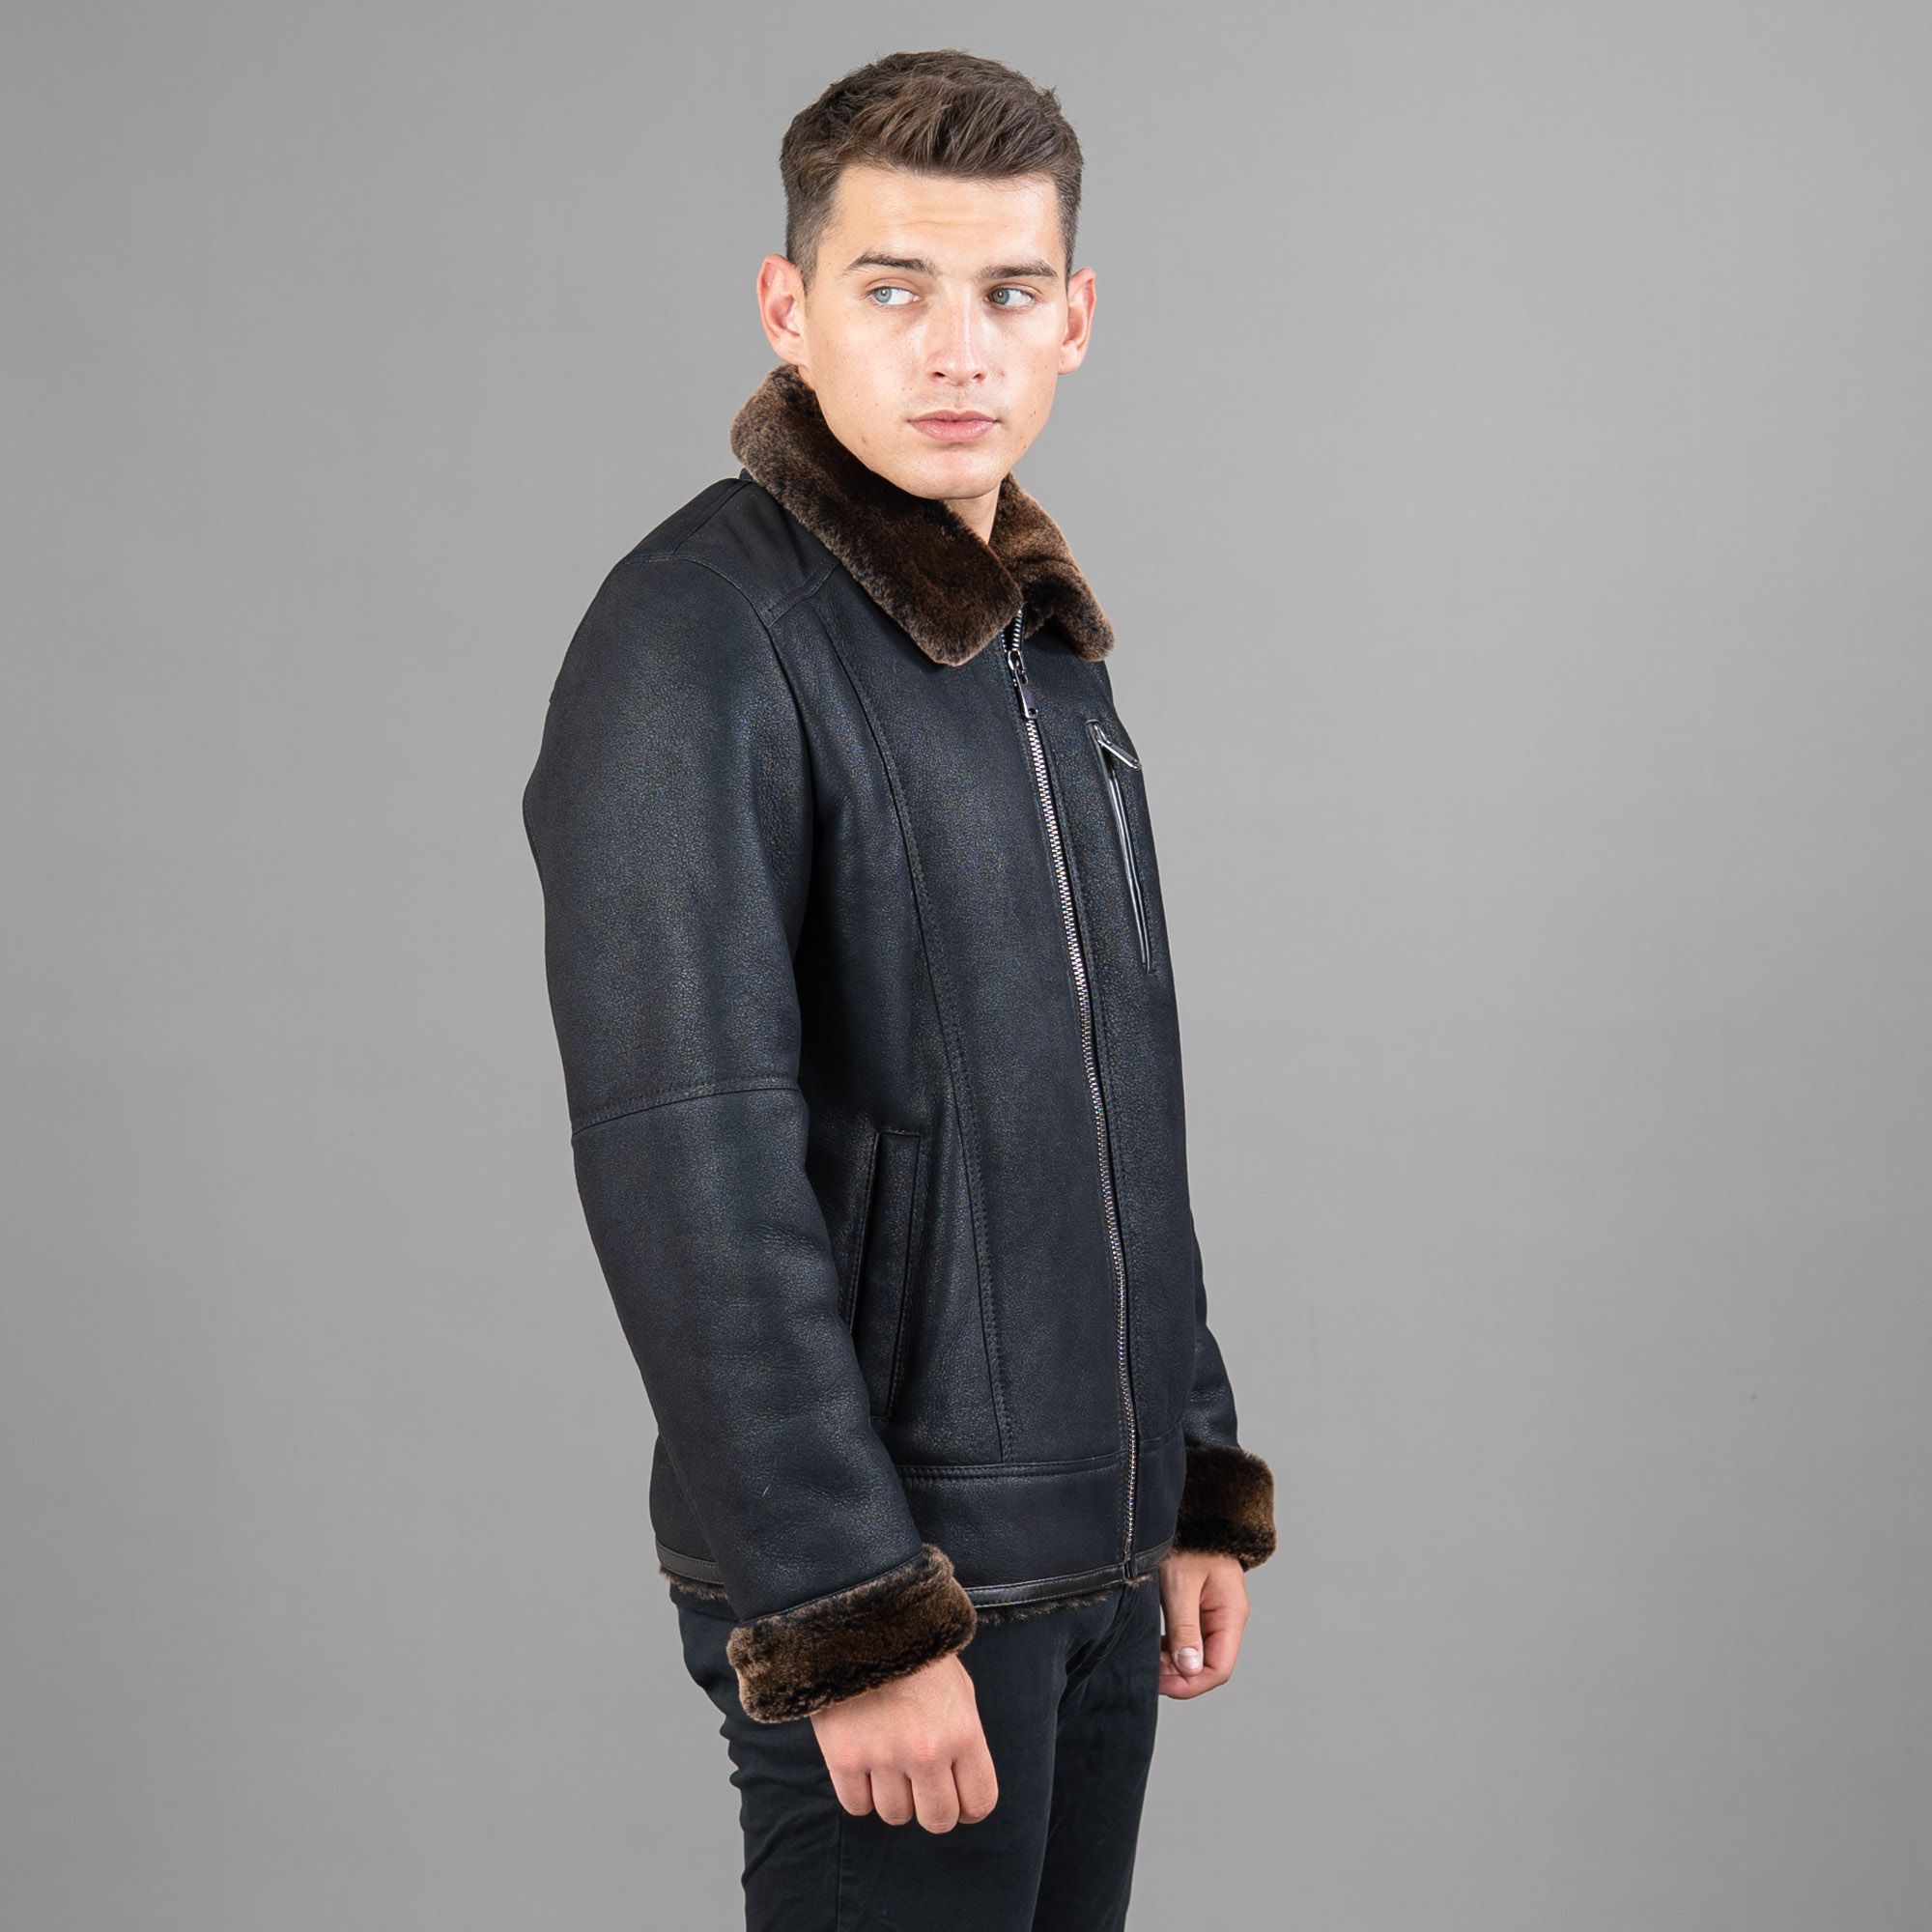 black-brown collared sheepskin jacket